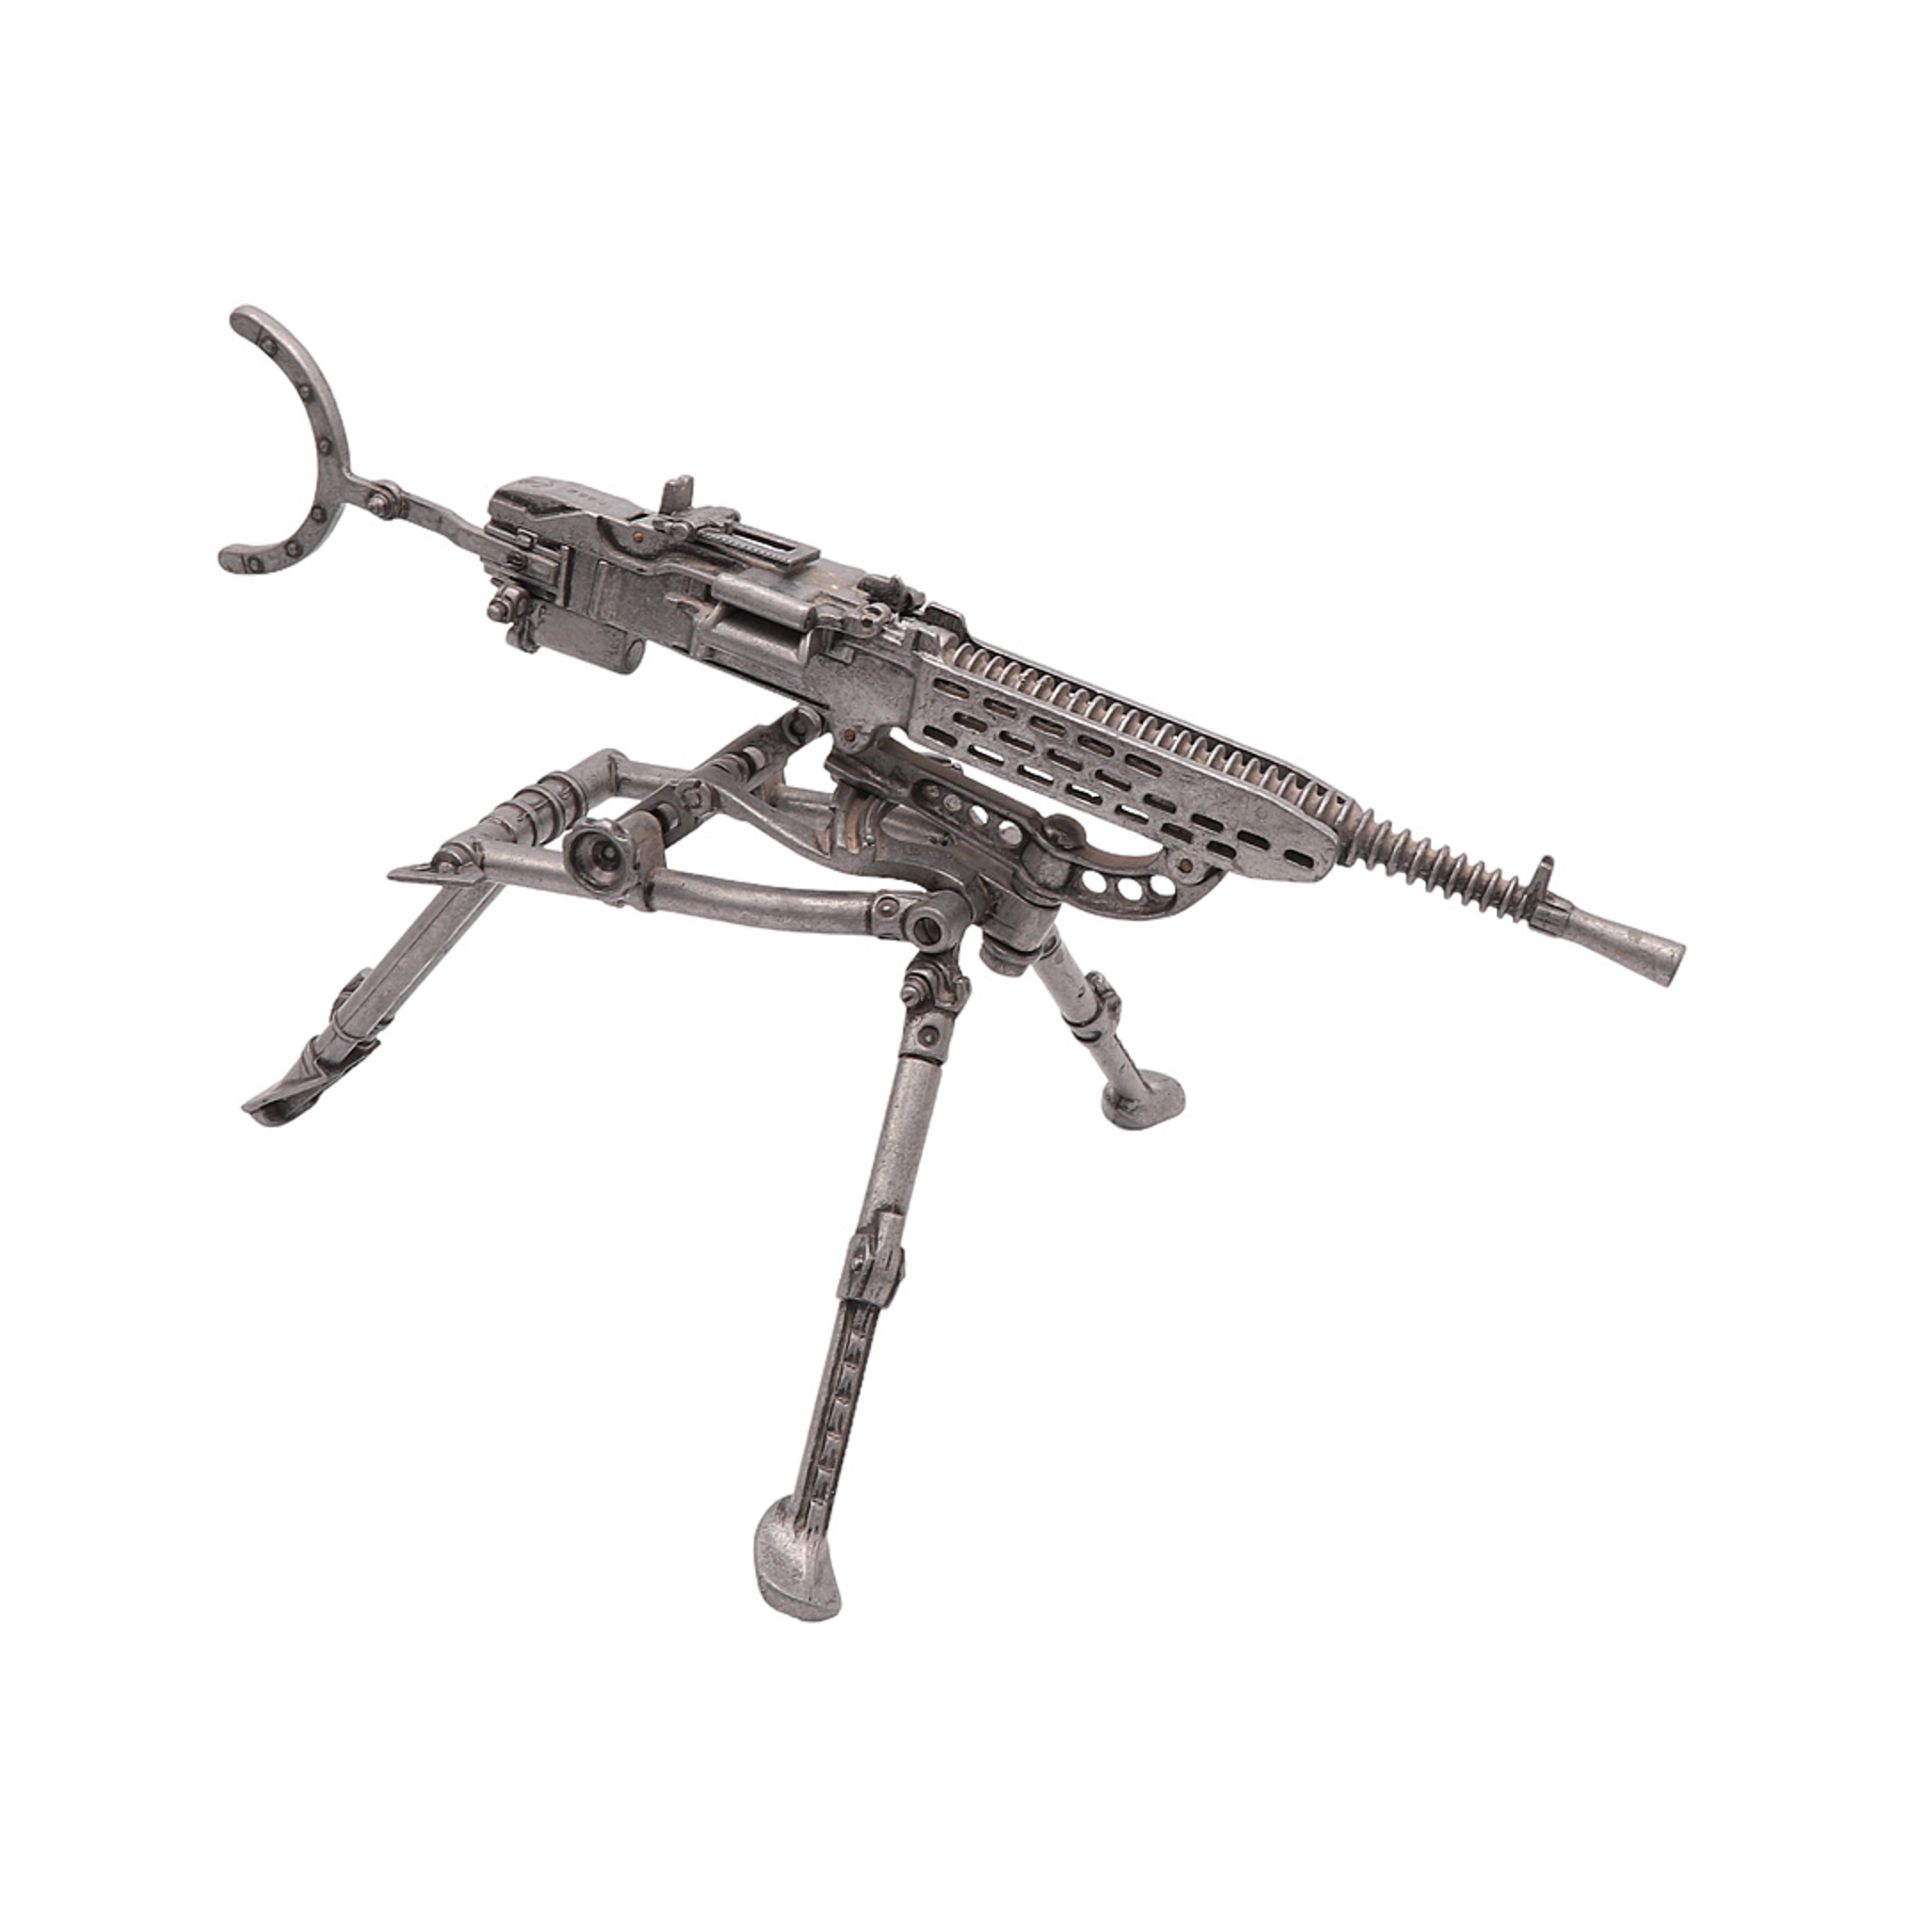 Skoda, Machine gun model